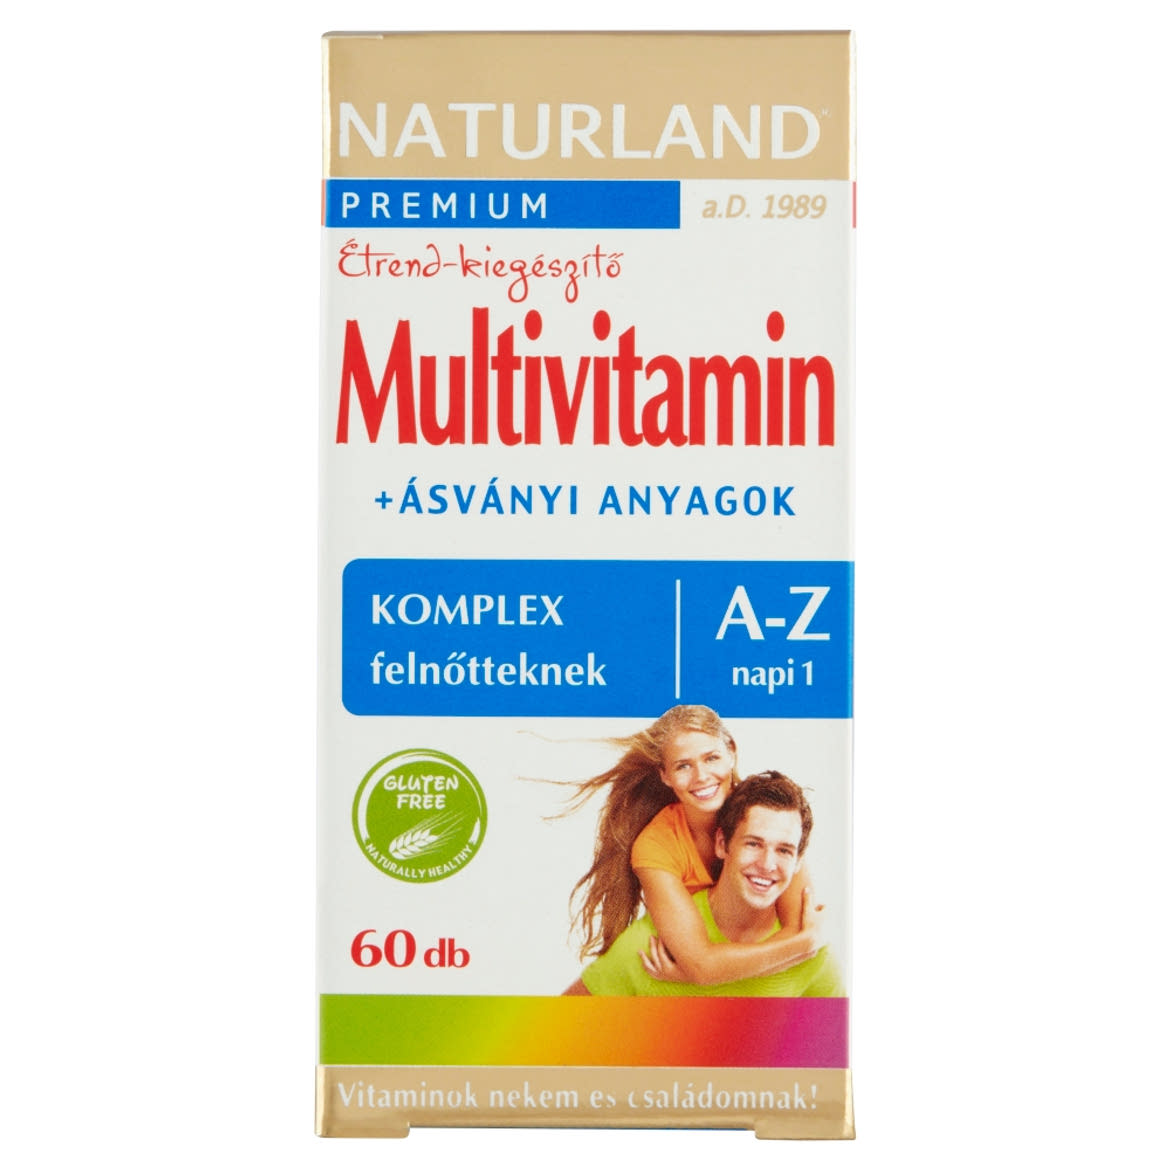 Naturland Premium multivitamin + ásványi anyagok étrend-kiegészítő tabletta